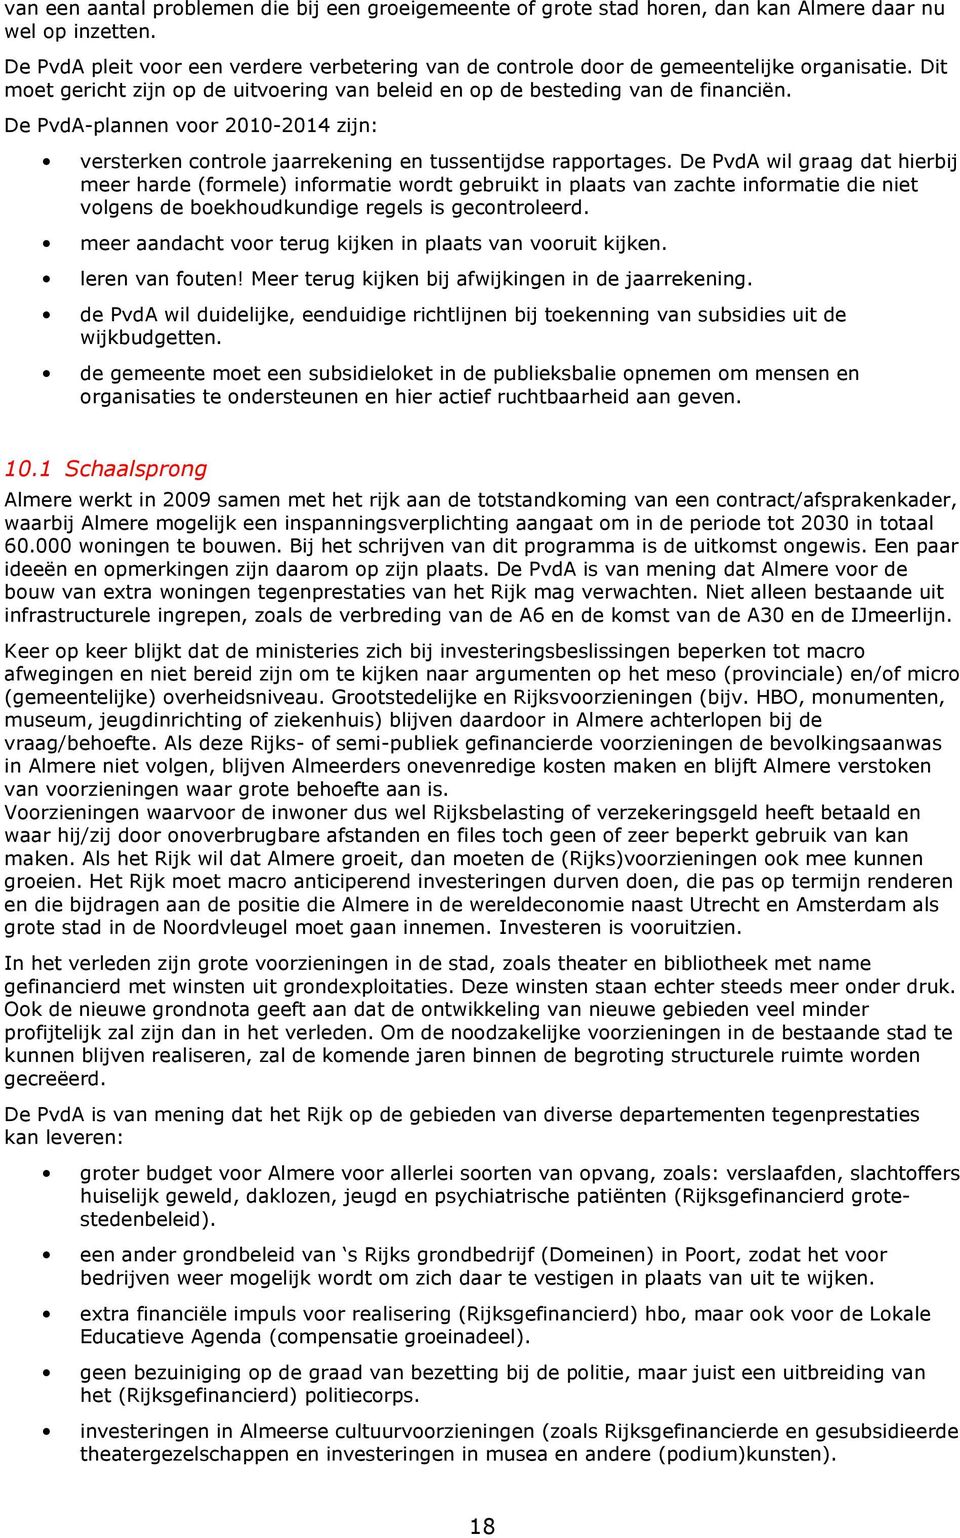 De PvdA-plannen voor 2010-2014 zijn: versterken controle jaarrekening en tussentijdse rapportages.